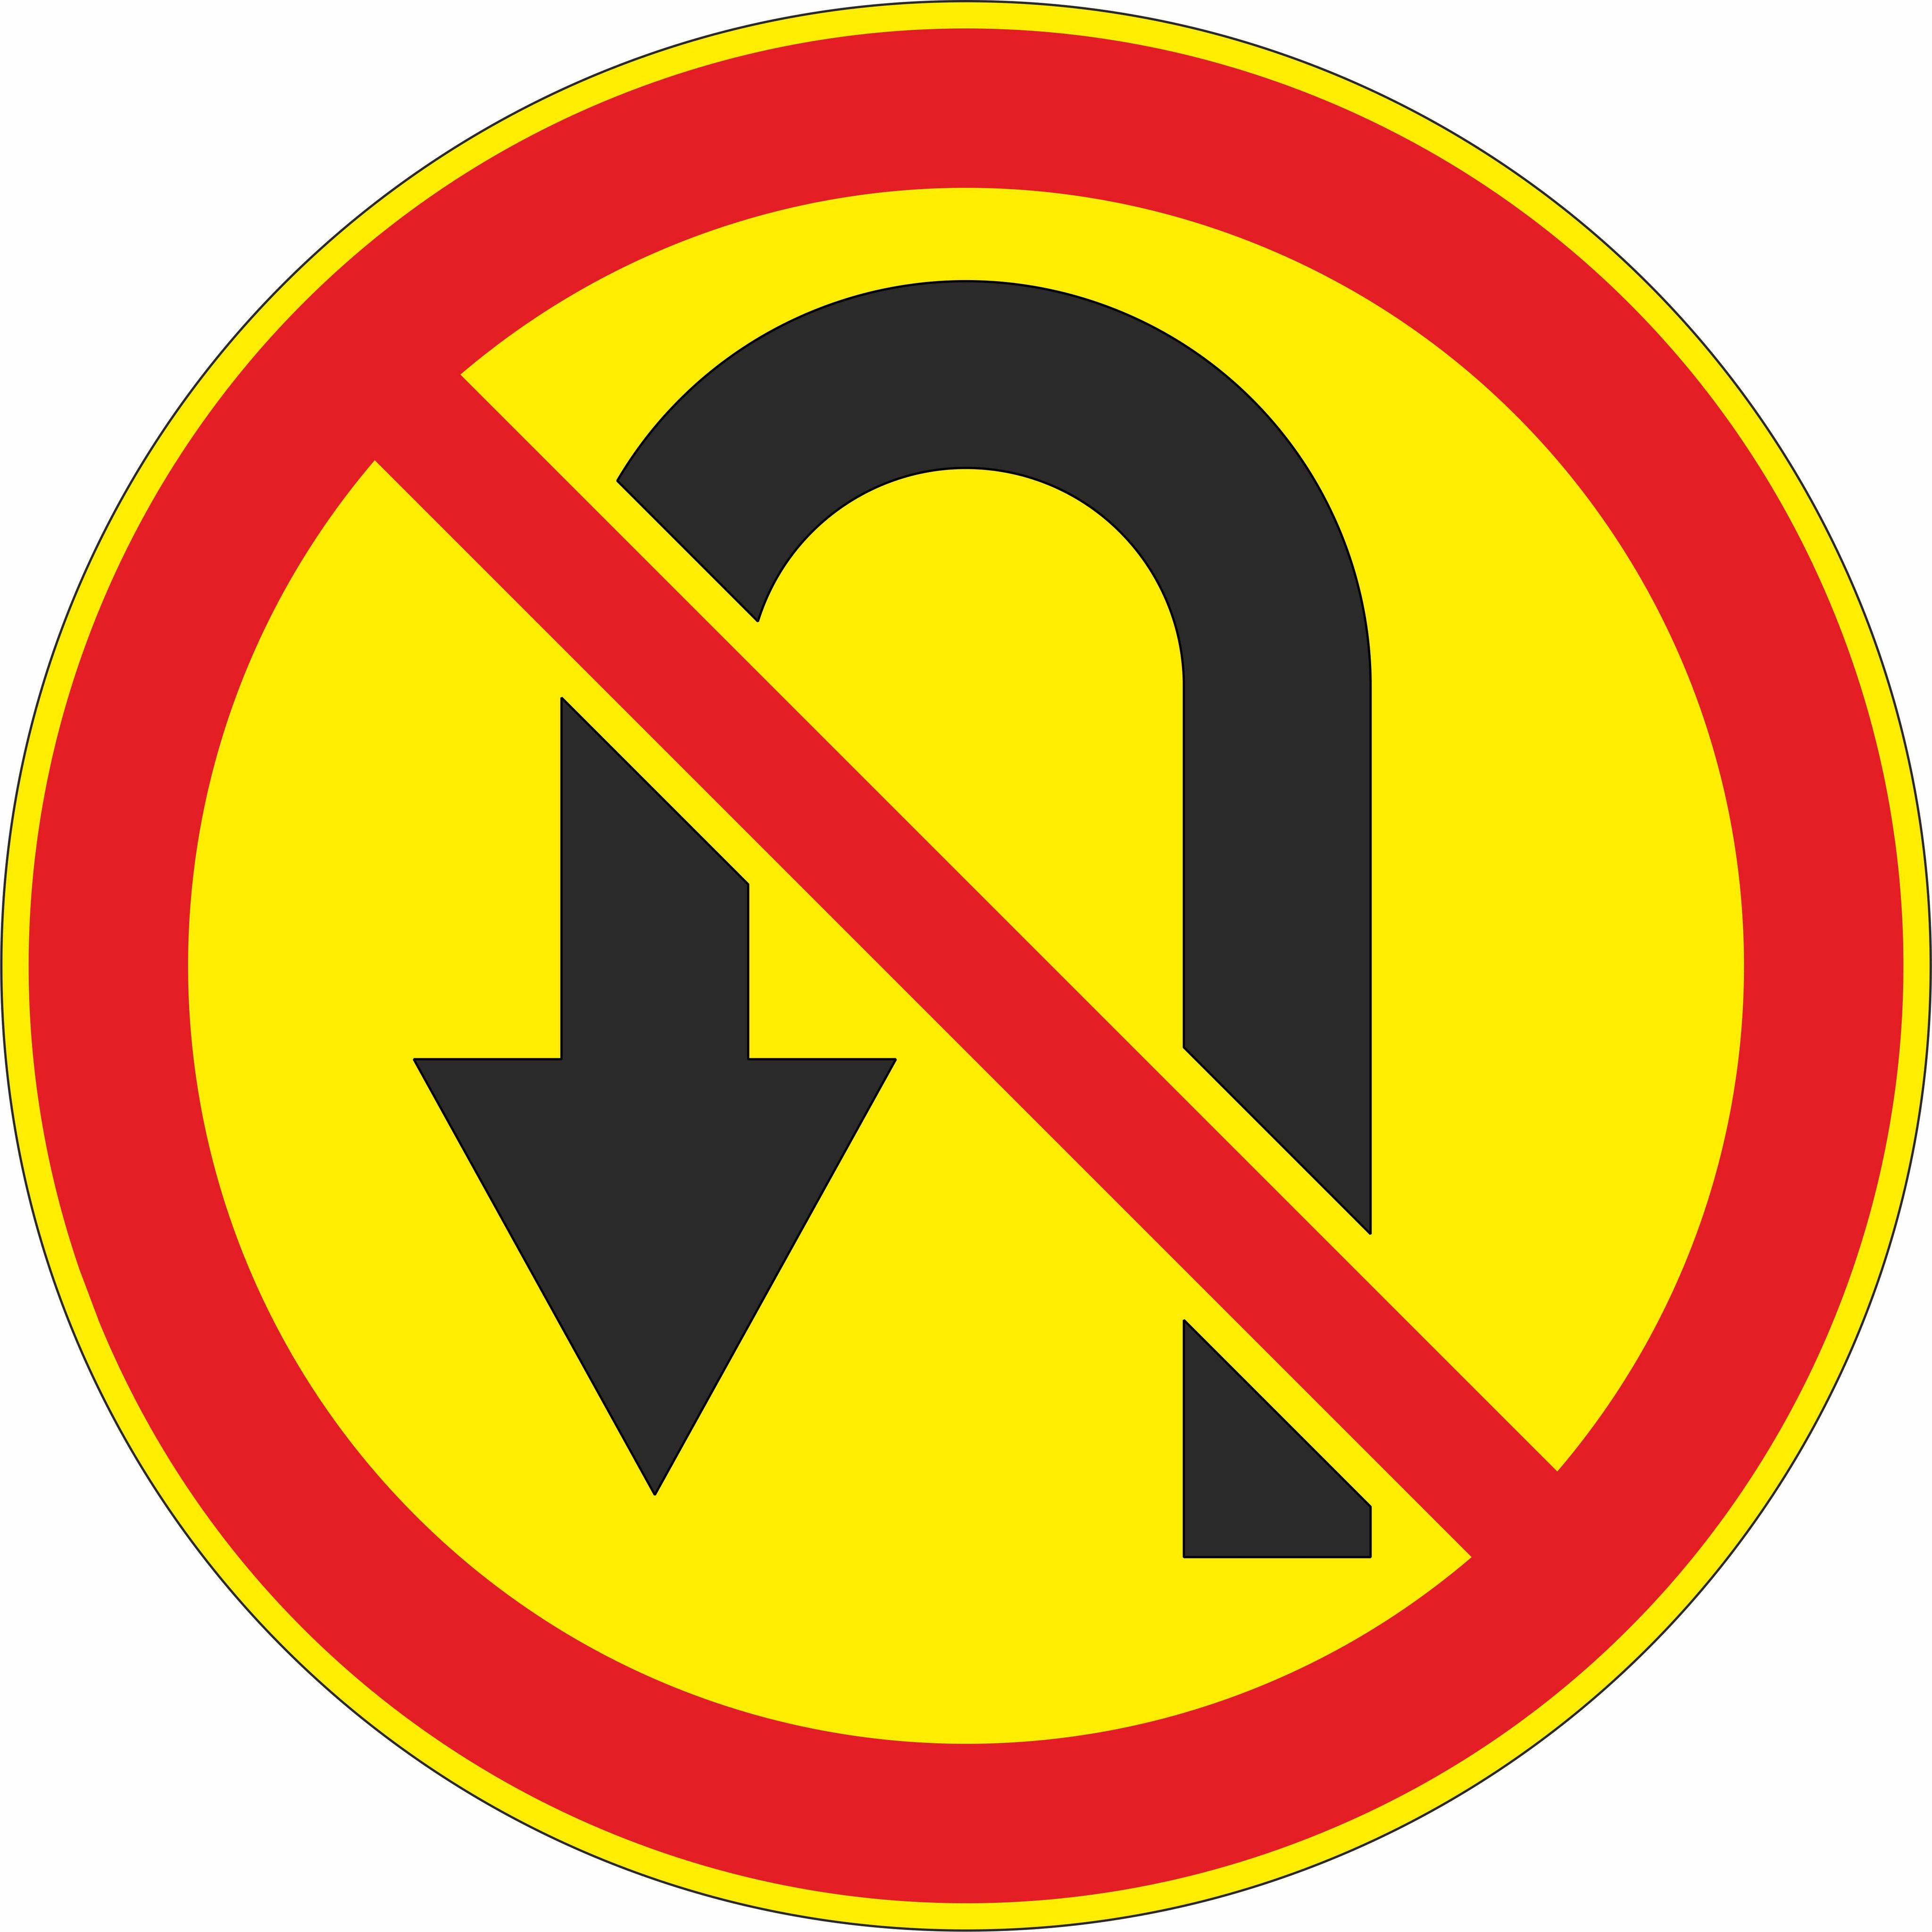 Запрещенный поворот. Разворот запрещен. Знак 3.19. Дорожный знак разворот запрещен. Знак 3.19 разворот запрещен.